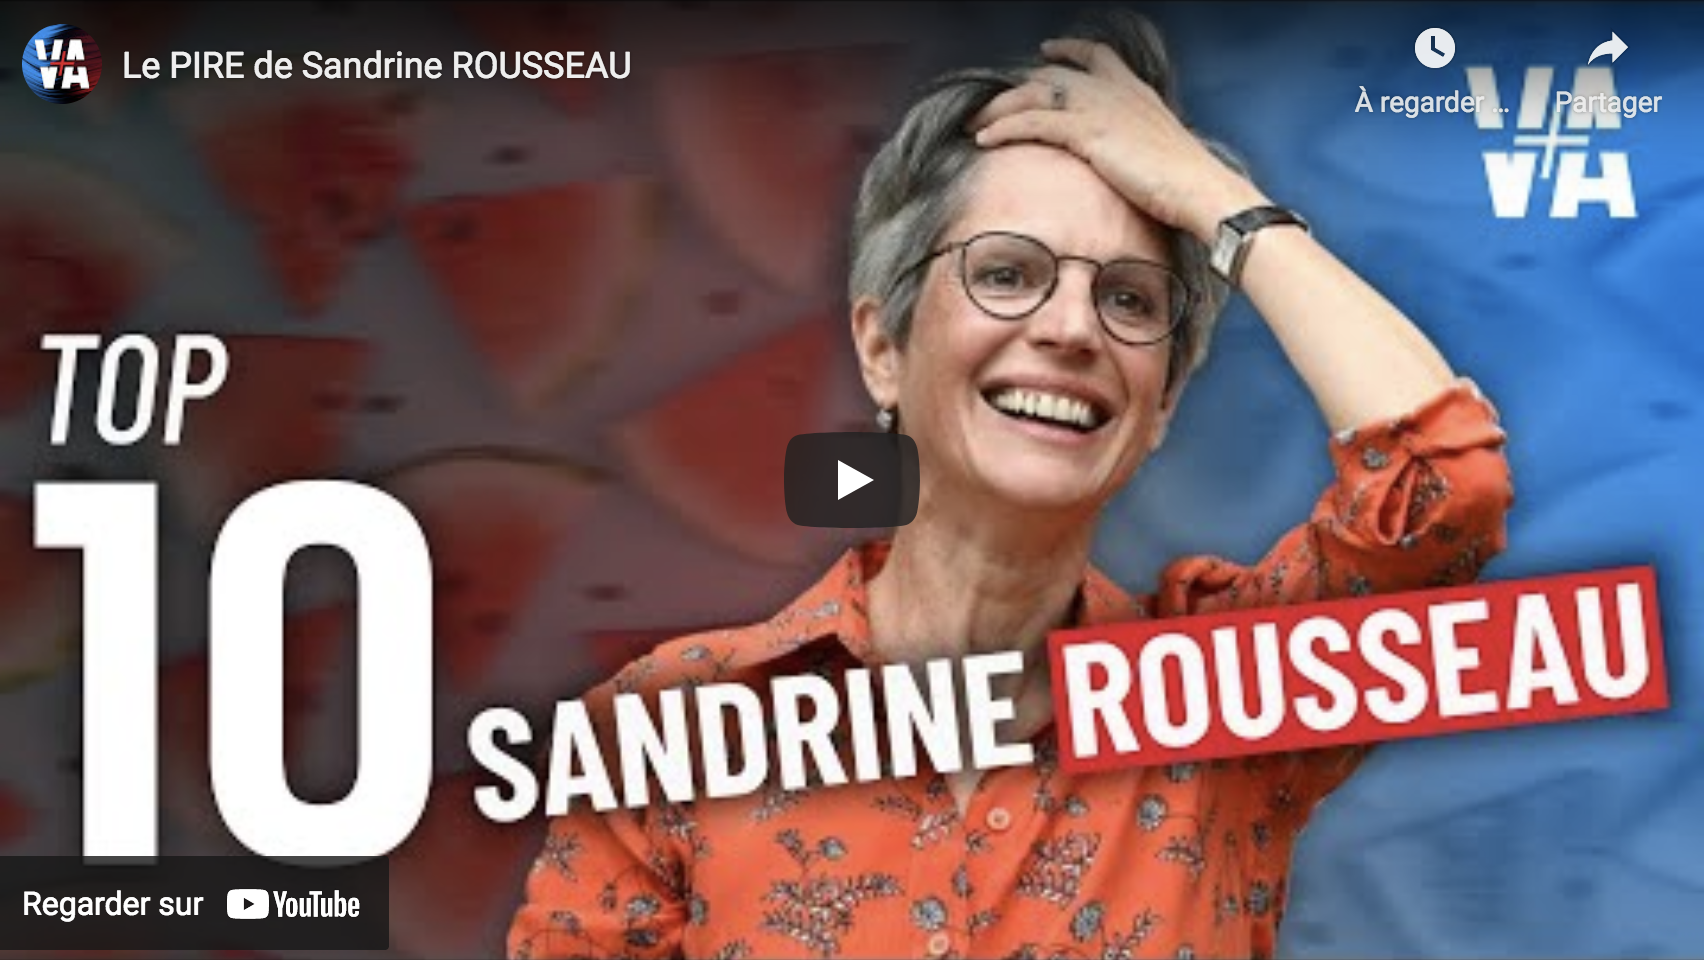 Le pire de Sandrine Rousseau (VIDÉO)